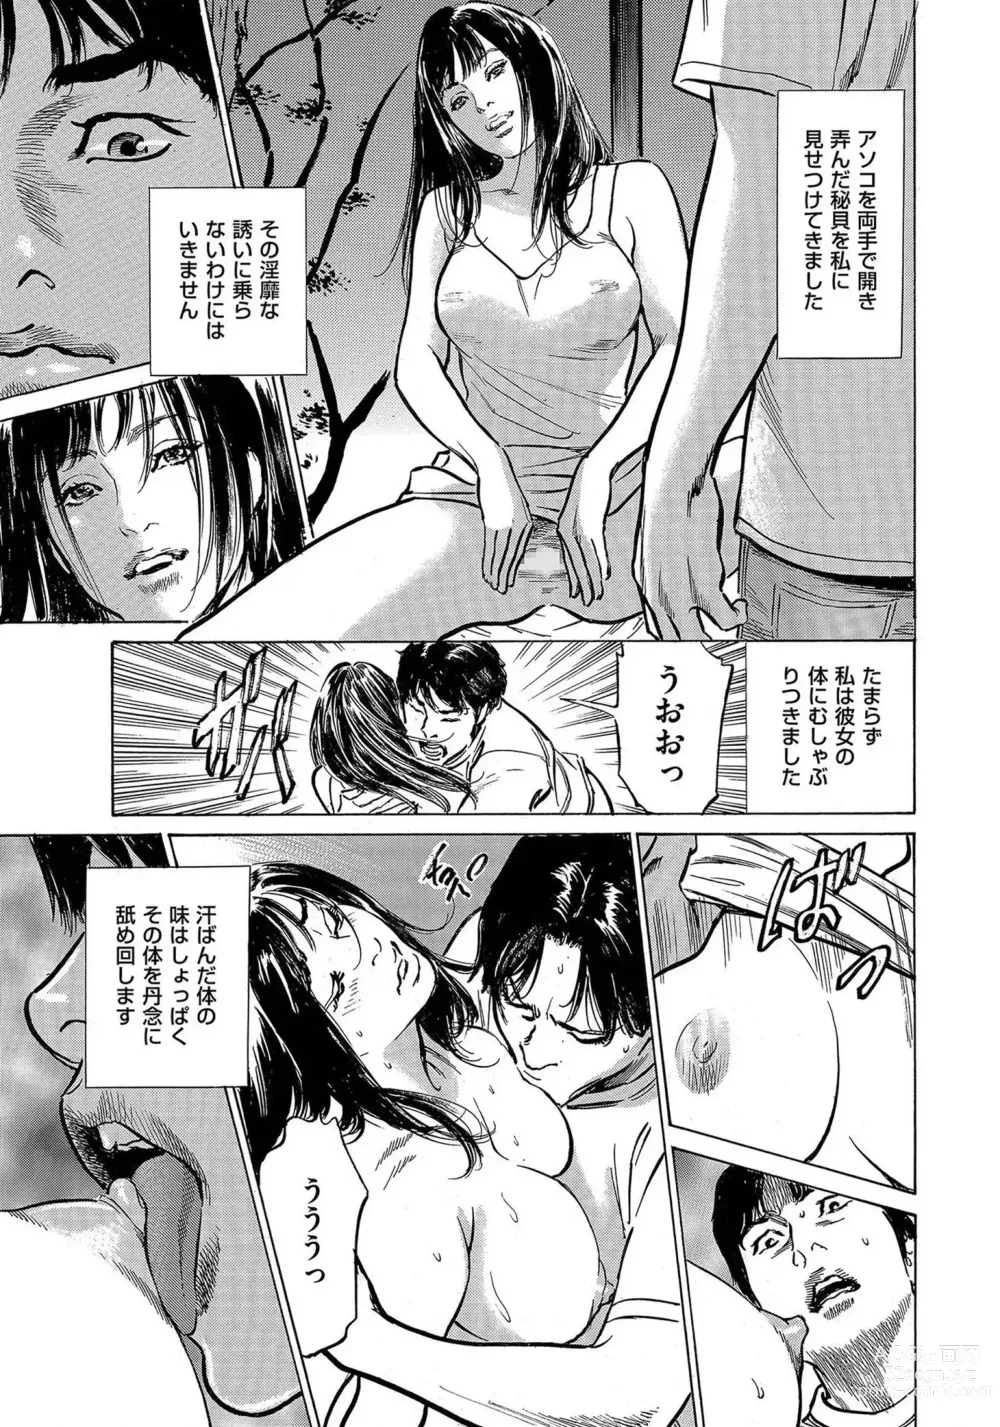 Page 28 of manga Saikou ni Toroketa Honki de Honto no Hanashi 16 episodes